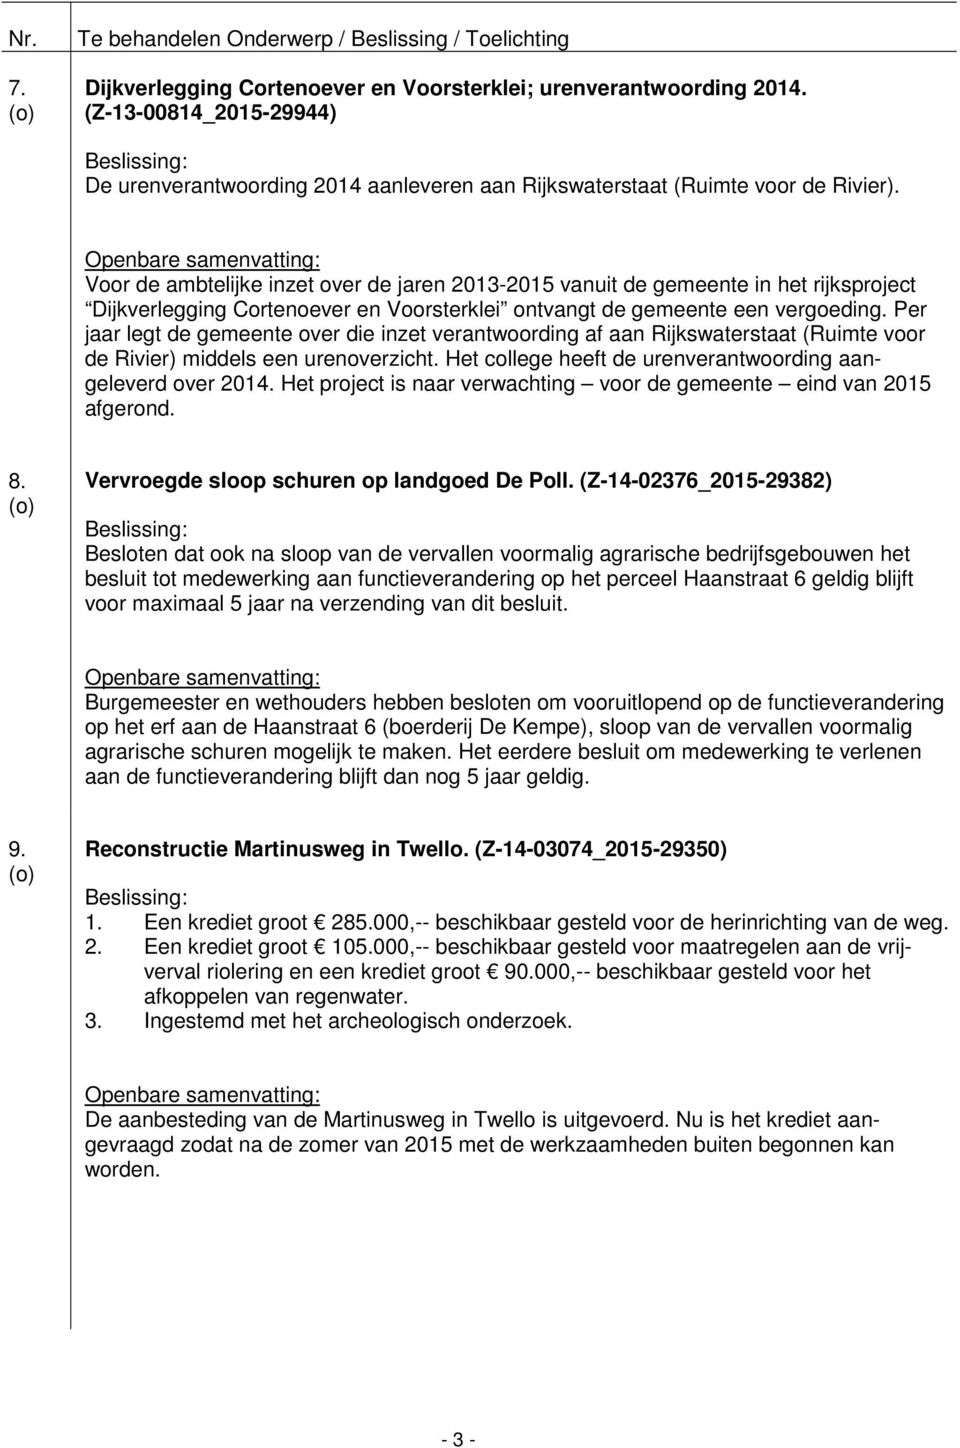 Per jaar legt de gemeente over die inzet verantwoording af aan Rijkswaterstaat (Ruimte voor de Rivier) middels een urenoverzicht. Het college heeft de urenverantwoording aangeleverd over 2014.